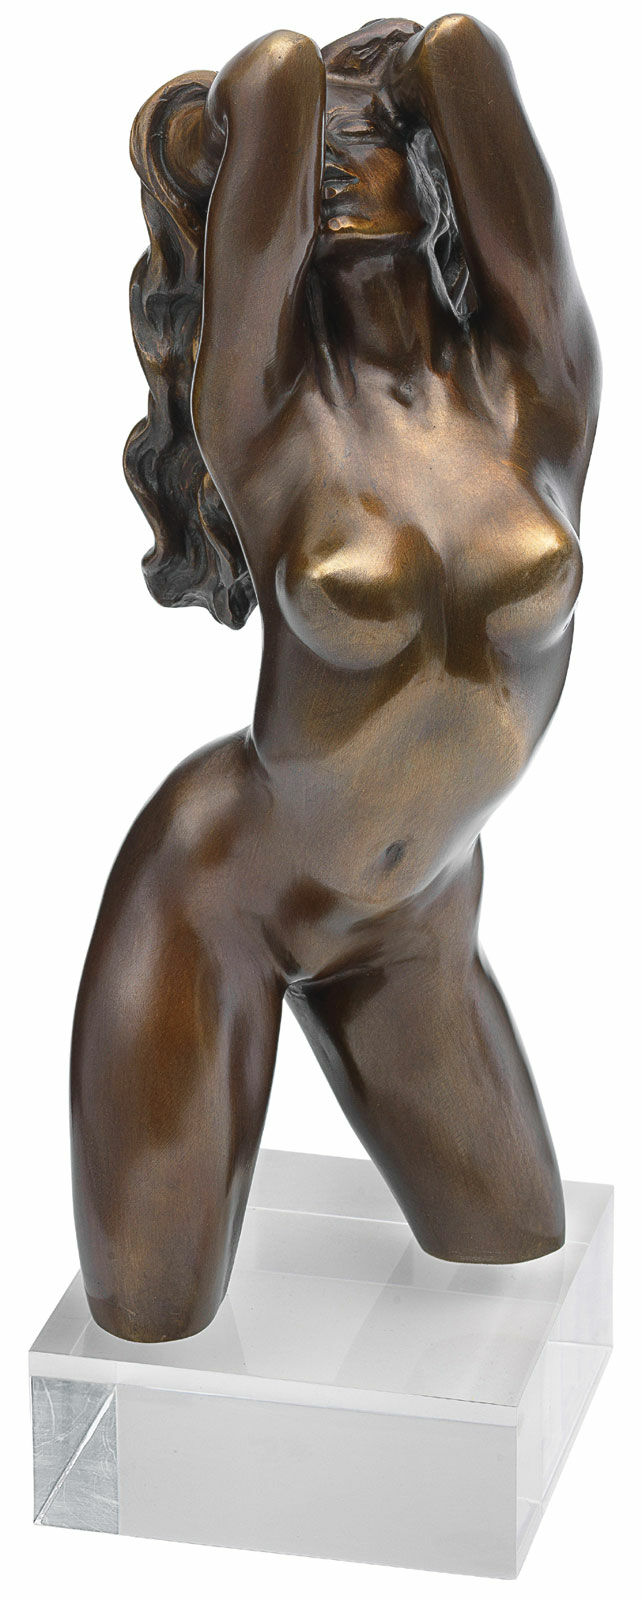 Skulptur "Venus", bronzeversion von Roman Johann Strobl